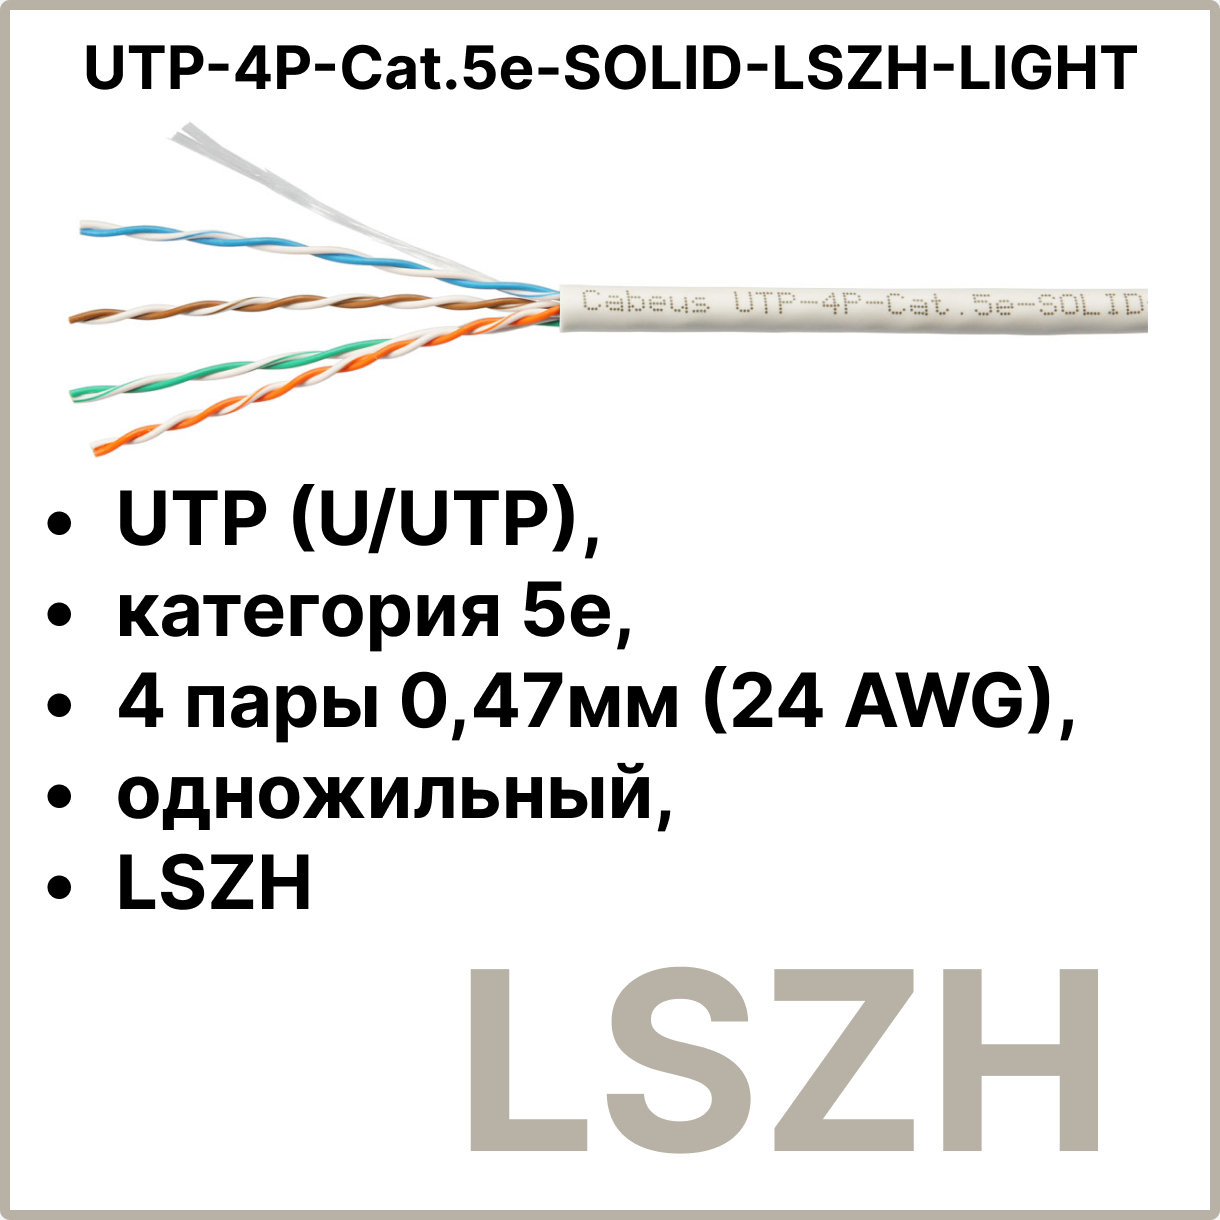 Cabeus UTP-4P-Cat.5e-SOLID-LSZH-LIGHT Кабель витая пара UTP (U/UTP), категория 5e, 4 пары 0,47мм (24 AWG), одножильный, LSZH (Low Smoke Zero Halogen) (305 м)